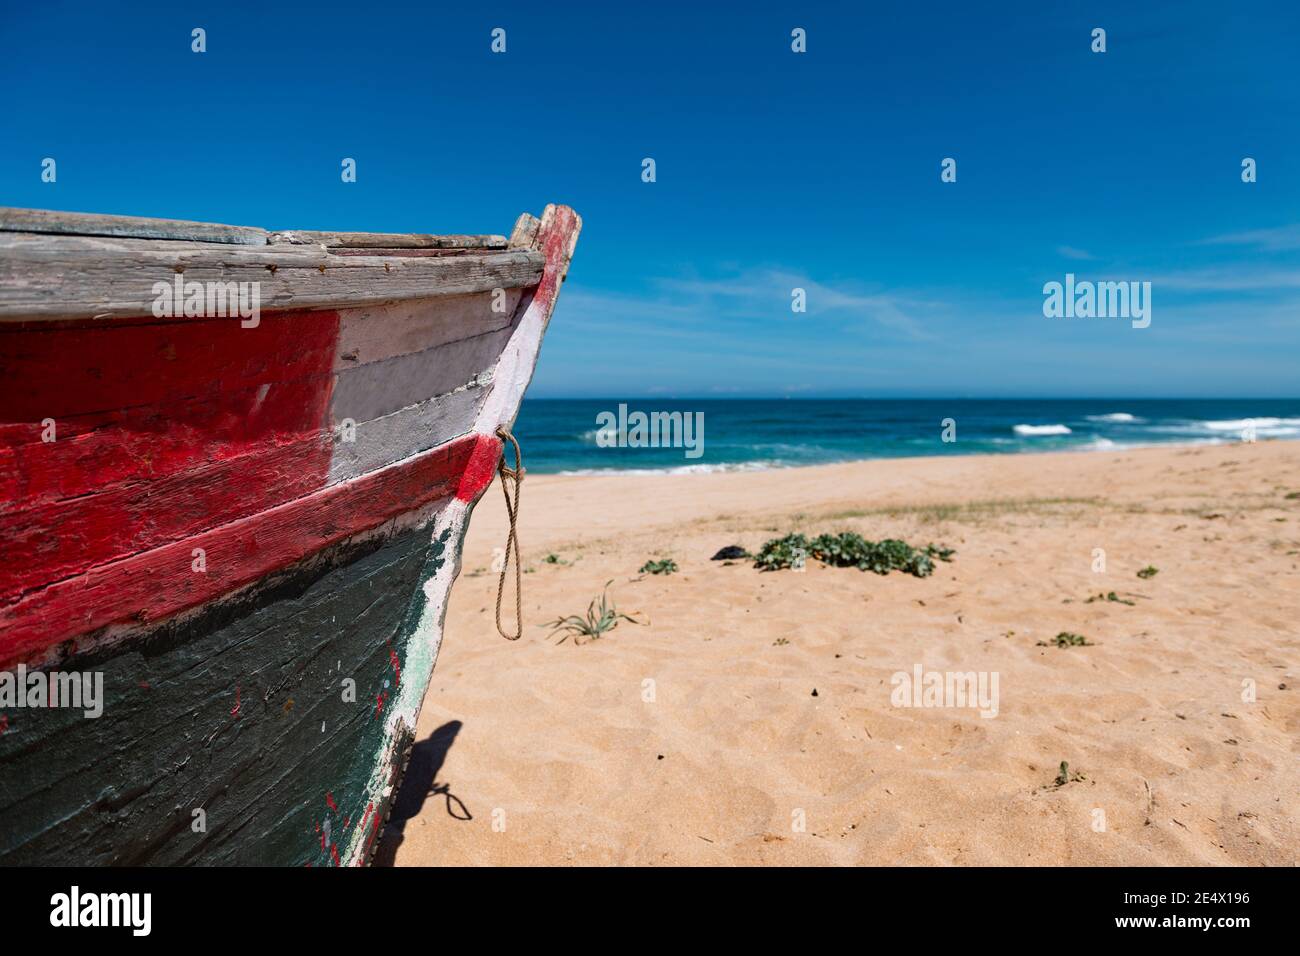 Détail de l'arc d'un bateau de pêche traditionnel coloré dans une plage près de la ville d'El Jadida sur la côte atlantique du Maroc. Banque D'Images